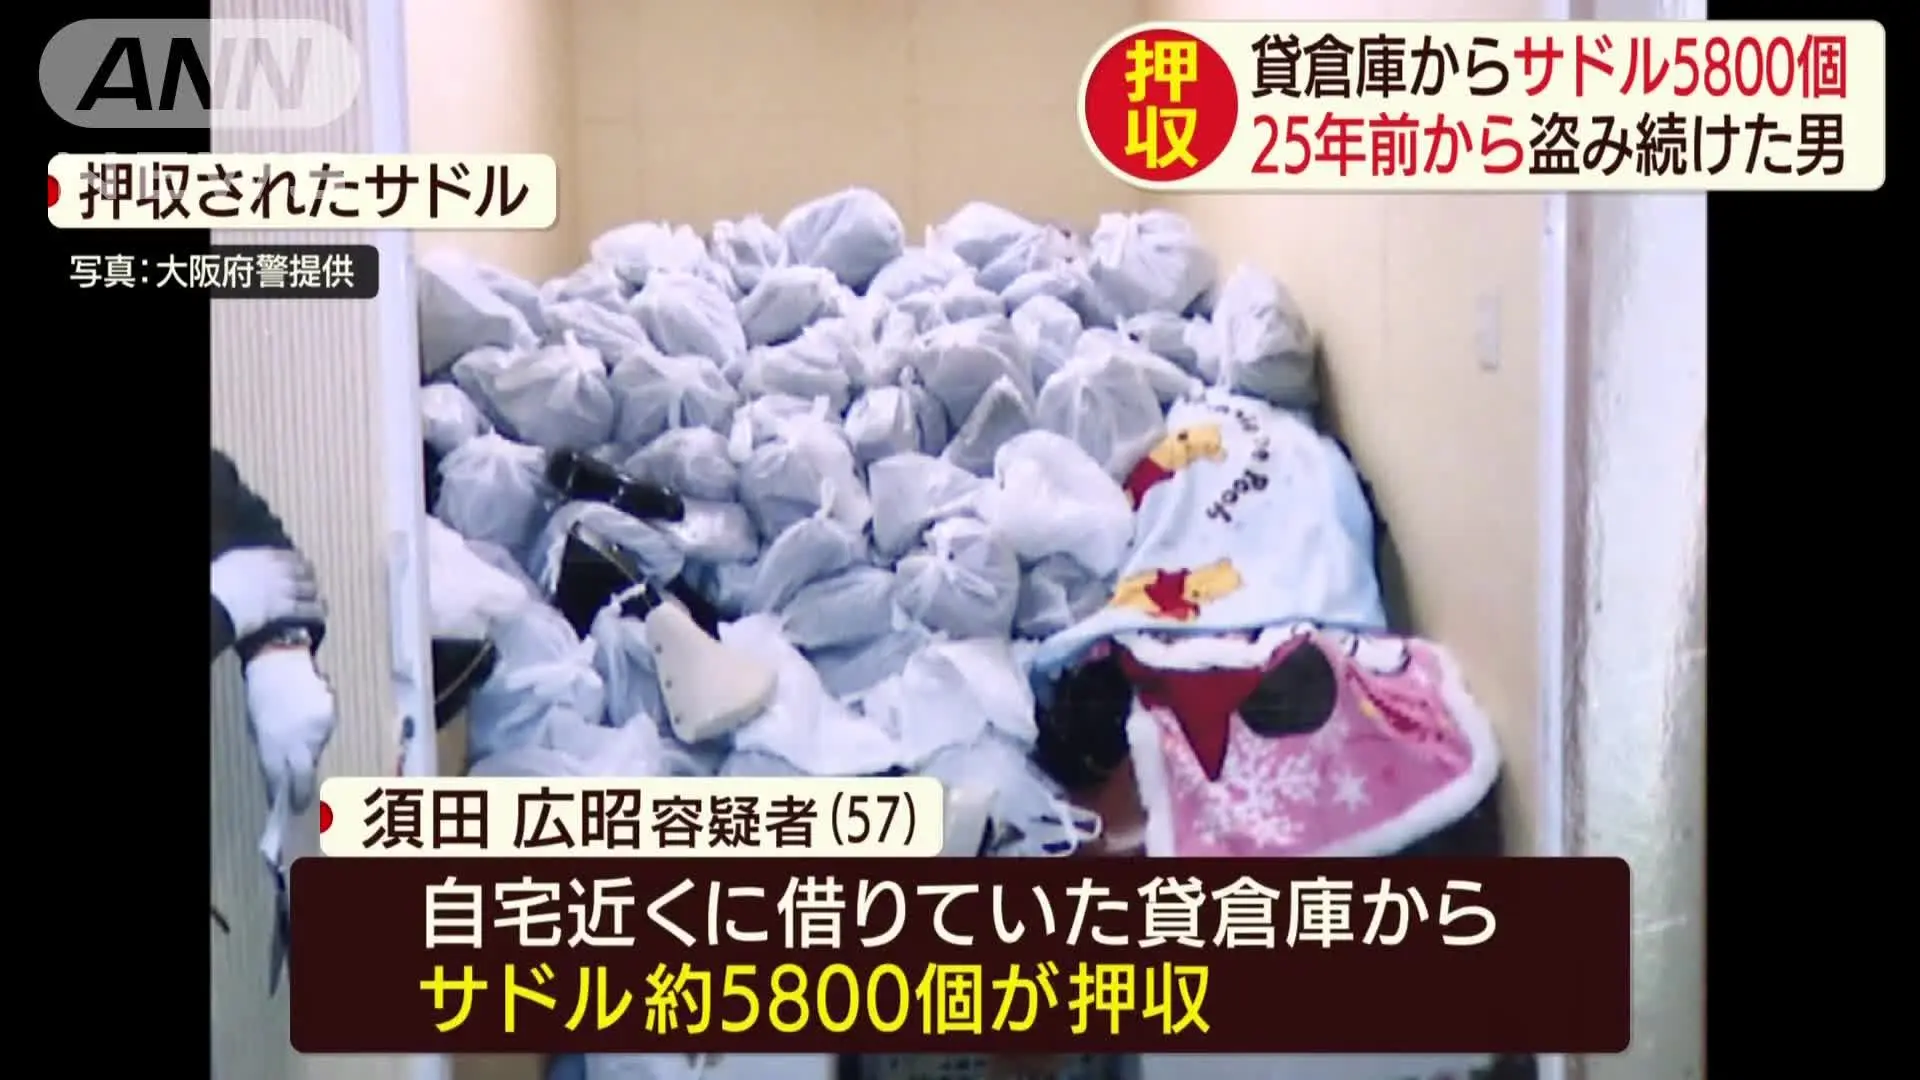 اعتراف راننده کامیون ژاپنی به سرقت 5800 صندلی دوچرخه + ویدئو